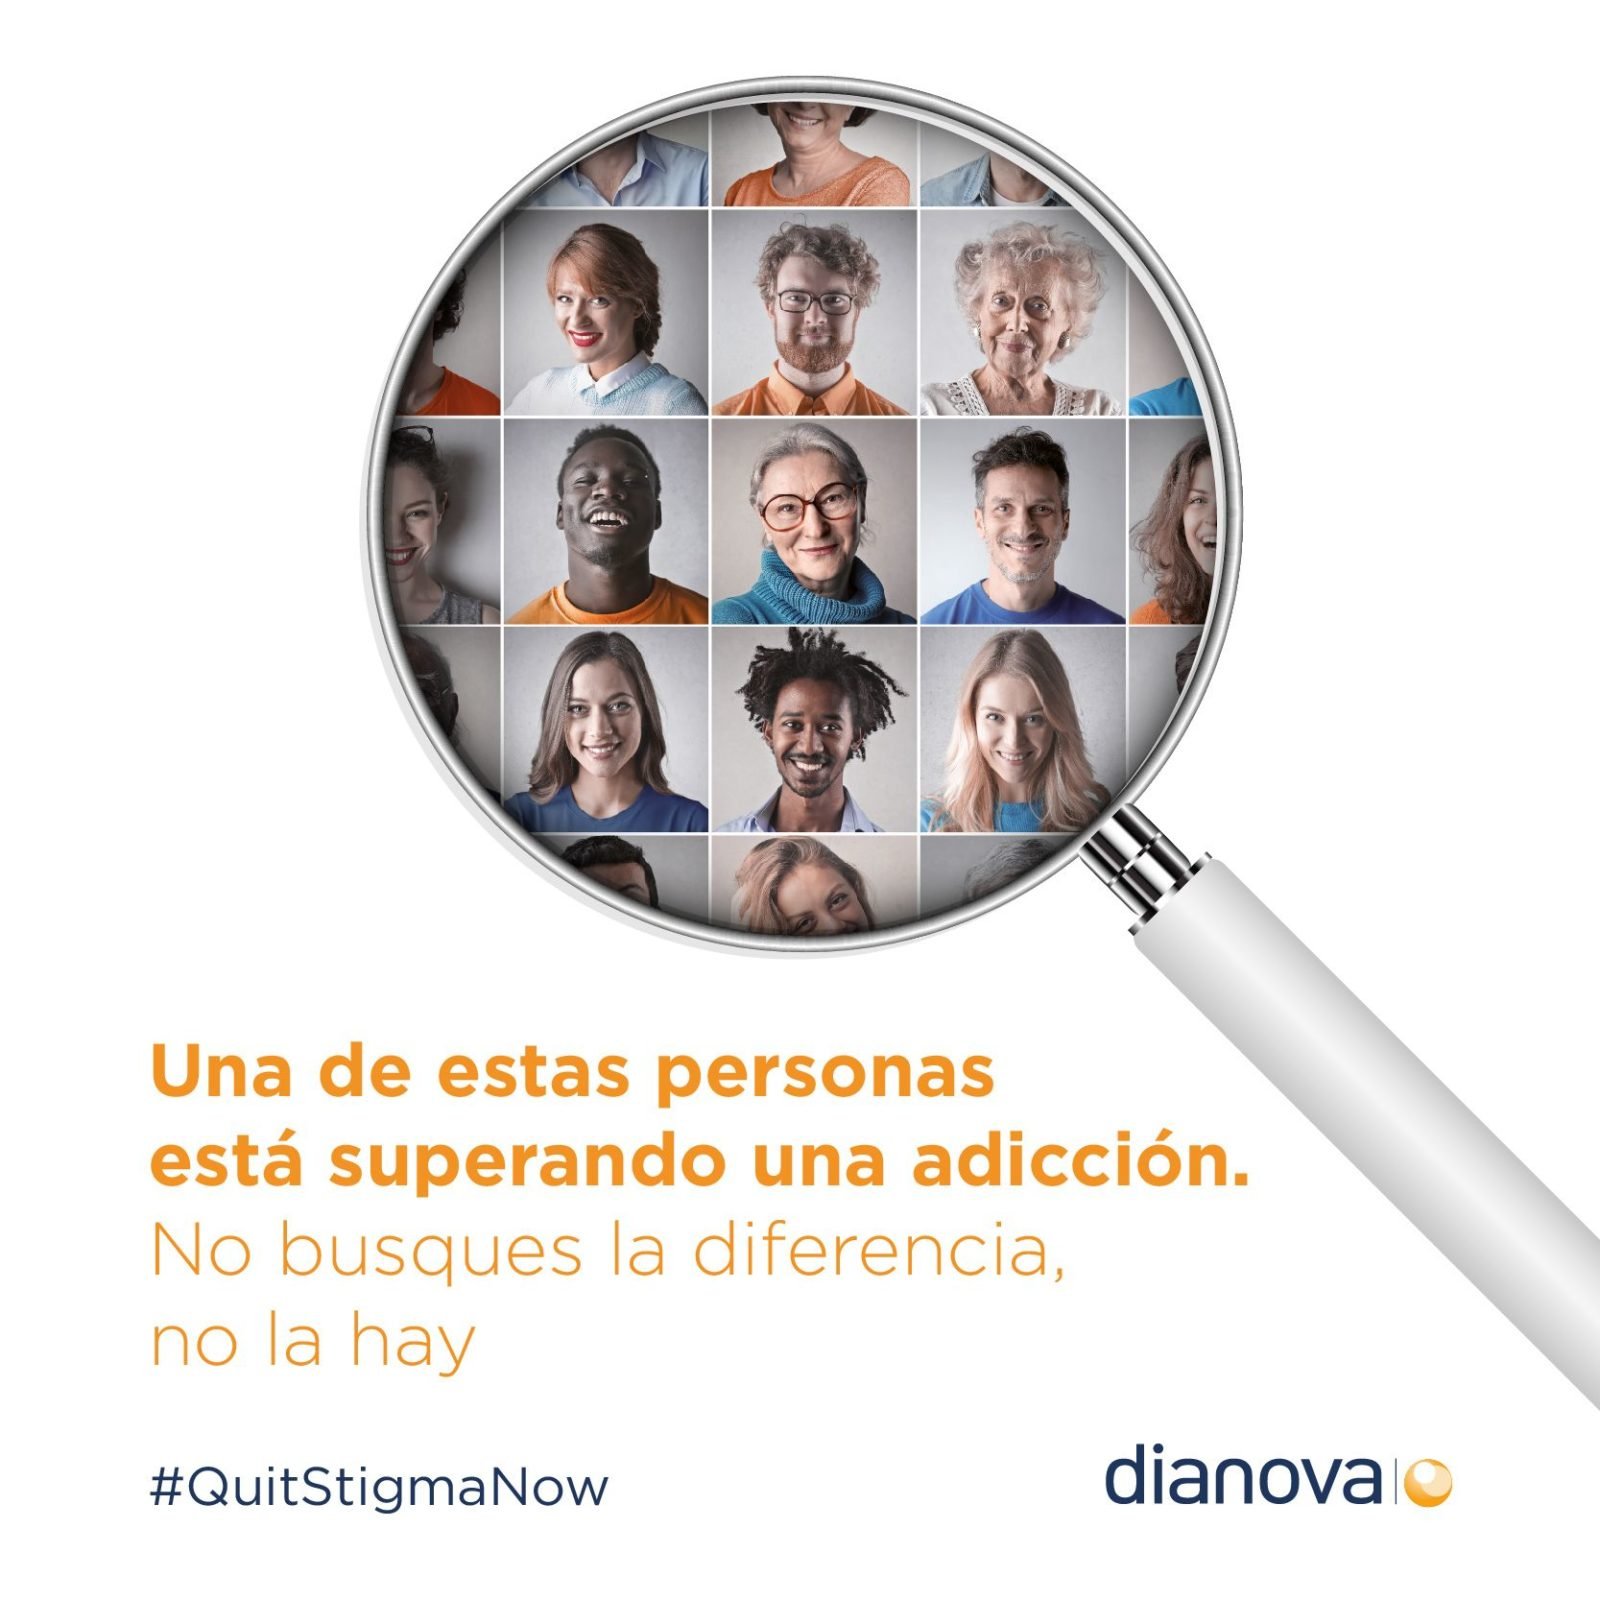 En este momento estás viendo #QuitStigmaNow, nueva campaña contra el estigma de la adicción